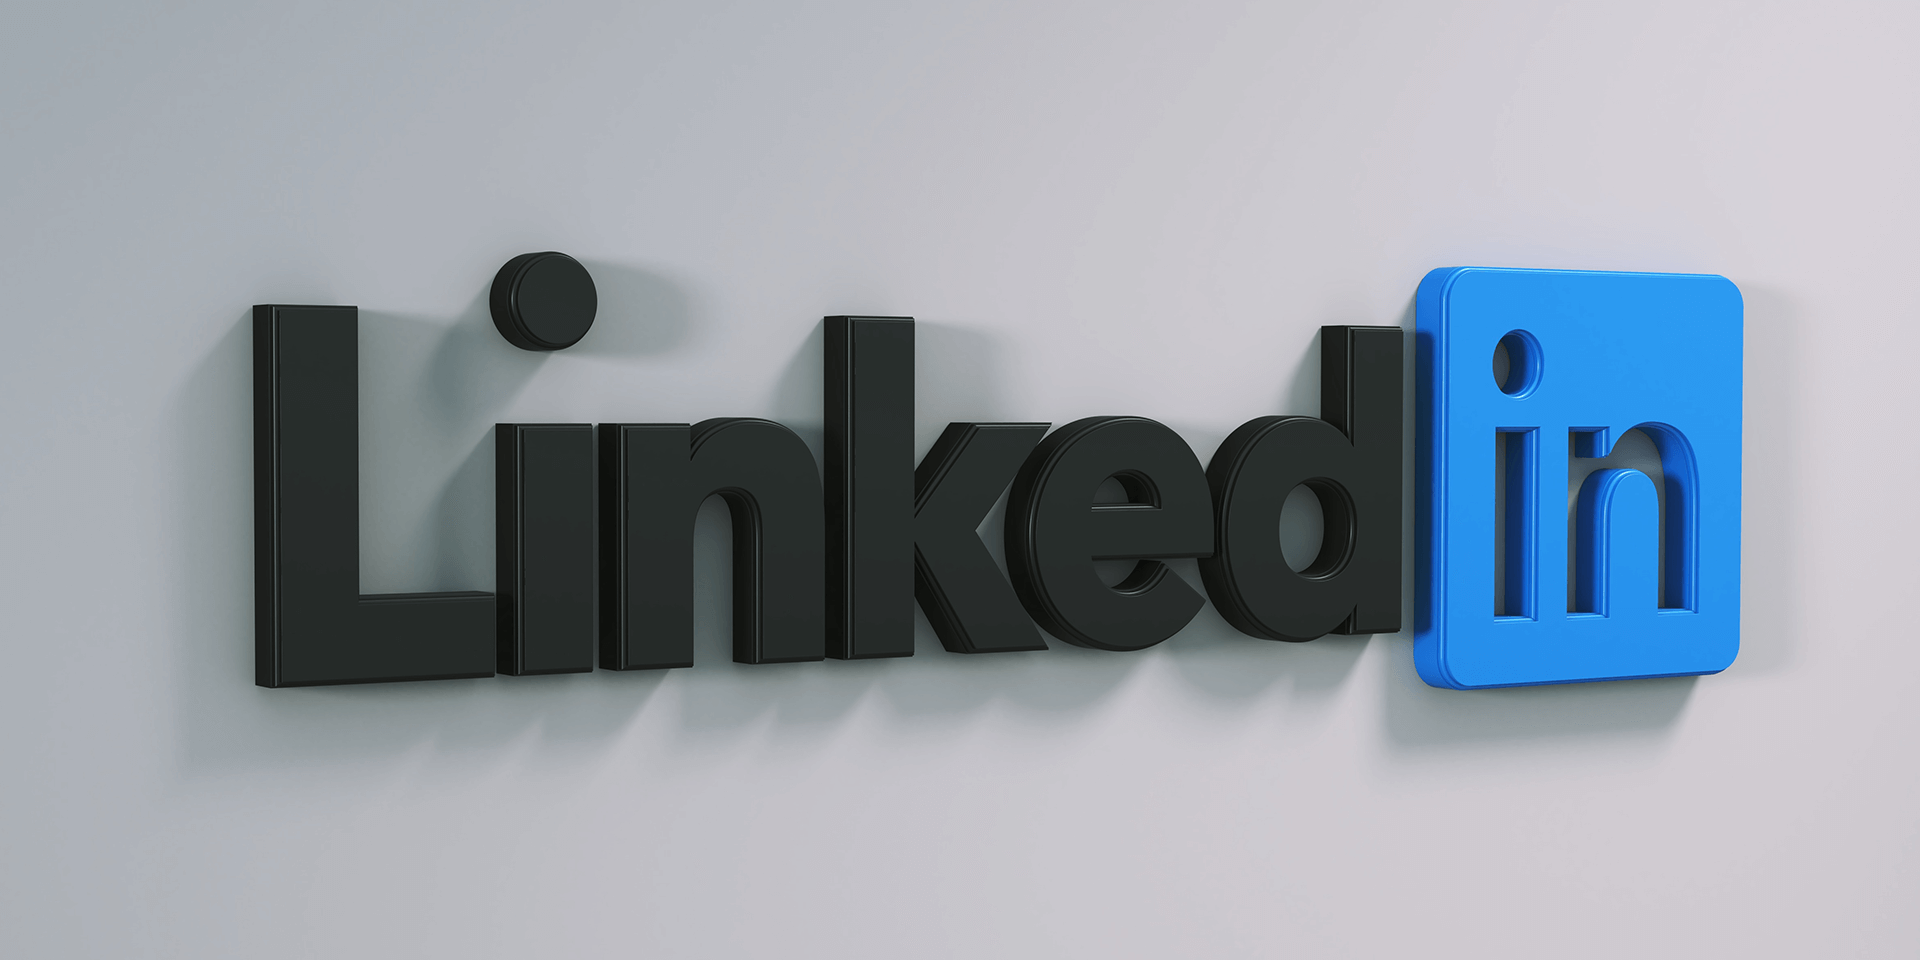 LinkedIn logo on a gray background.